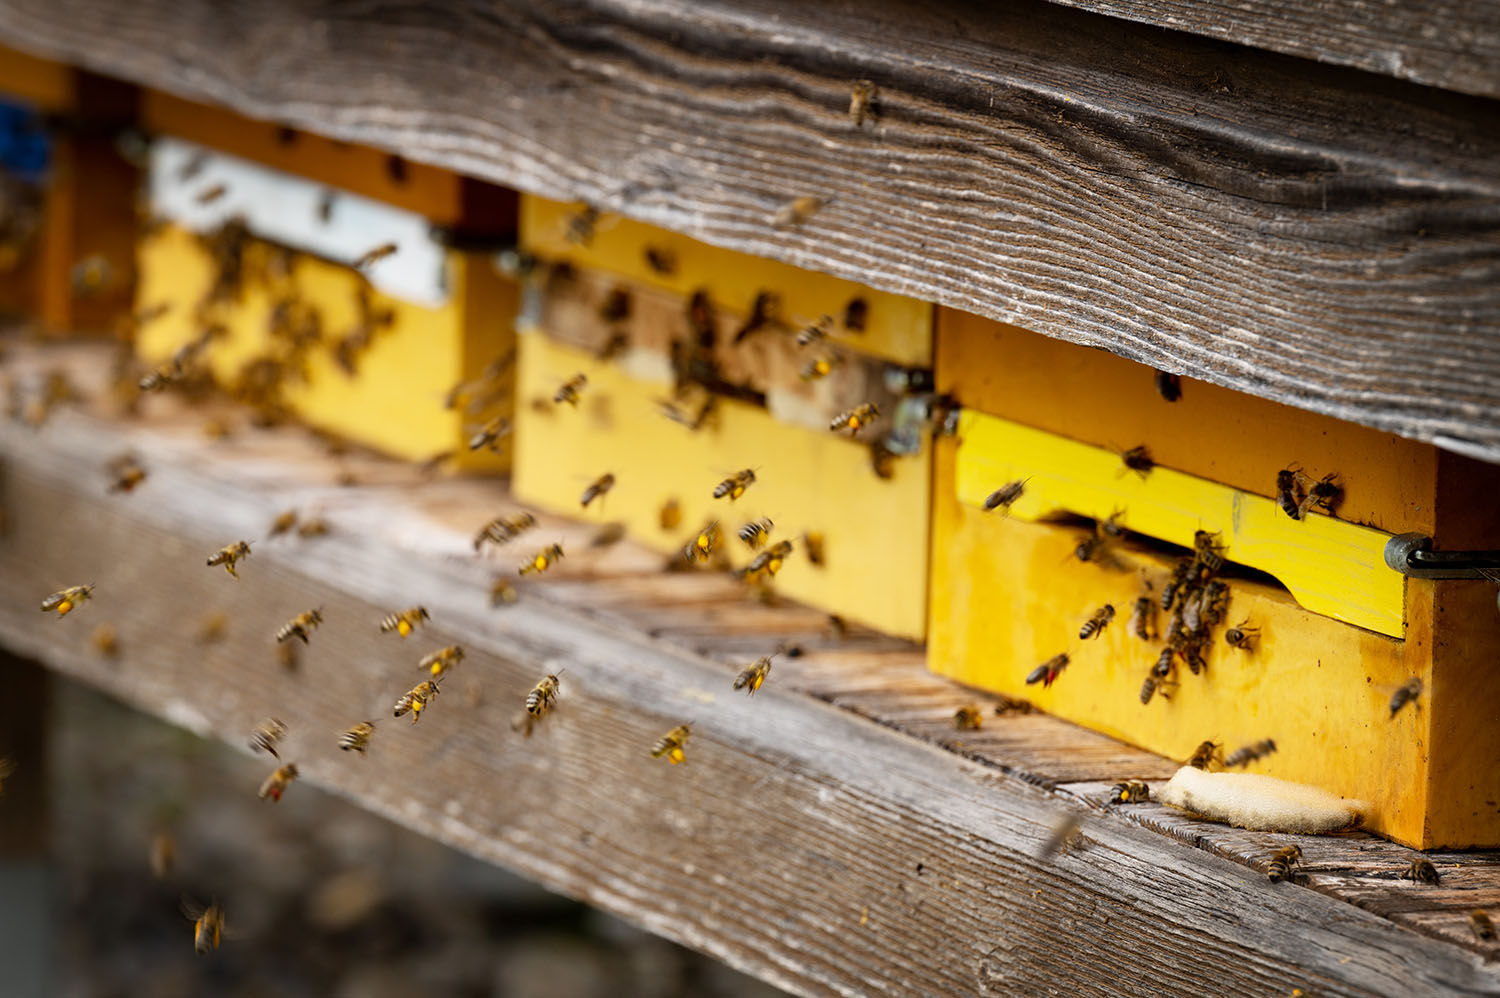 LR Gantner: „Bienen unverzichtbar für blühende Kulturlandschaft“